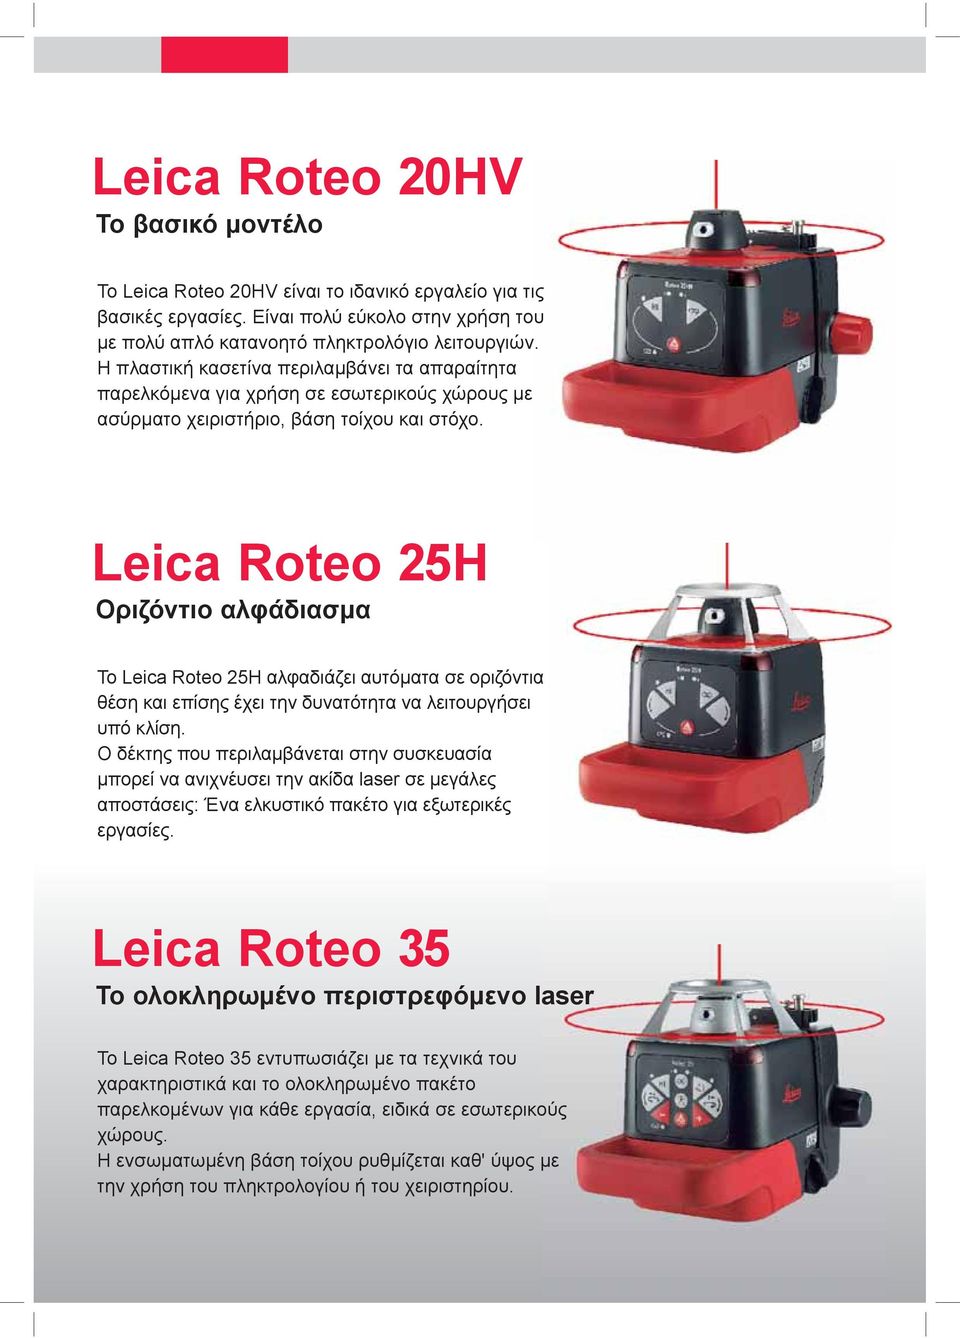 Leica Roteo 25H Οριζόντιο αλφάδιασμα Το Leica Roteo 25H αλφαδιάζει αυτόματα σε οριζόντια θέση και επίσης έχει την δυνατότητα να λειτουργήσει υπό κλίση.